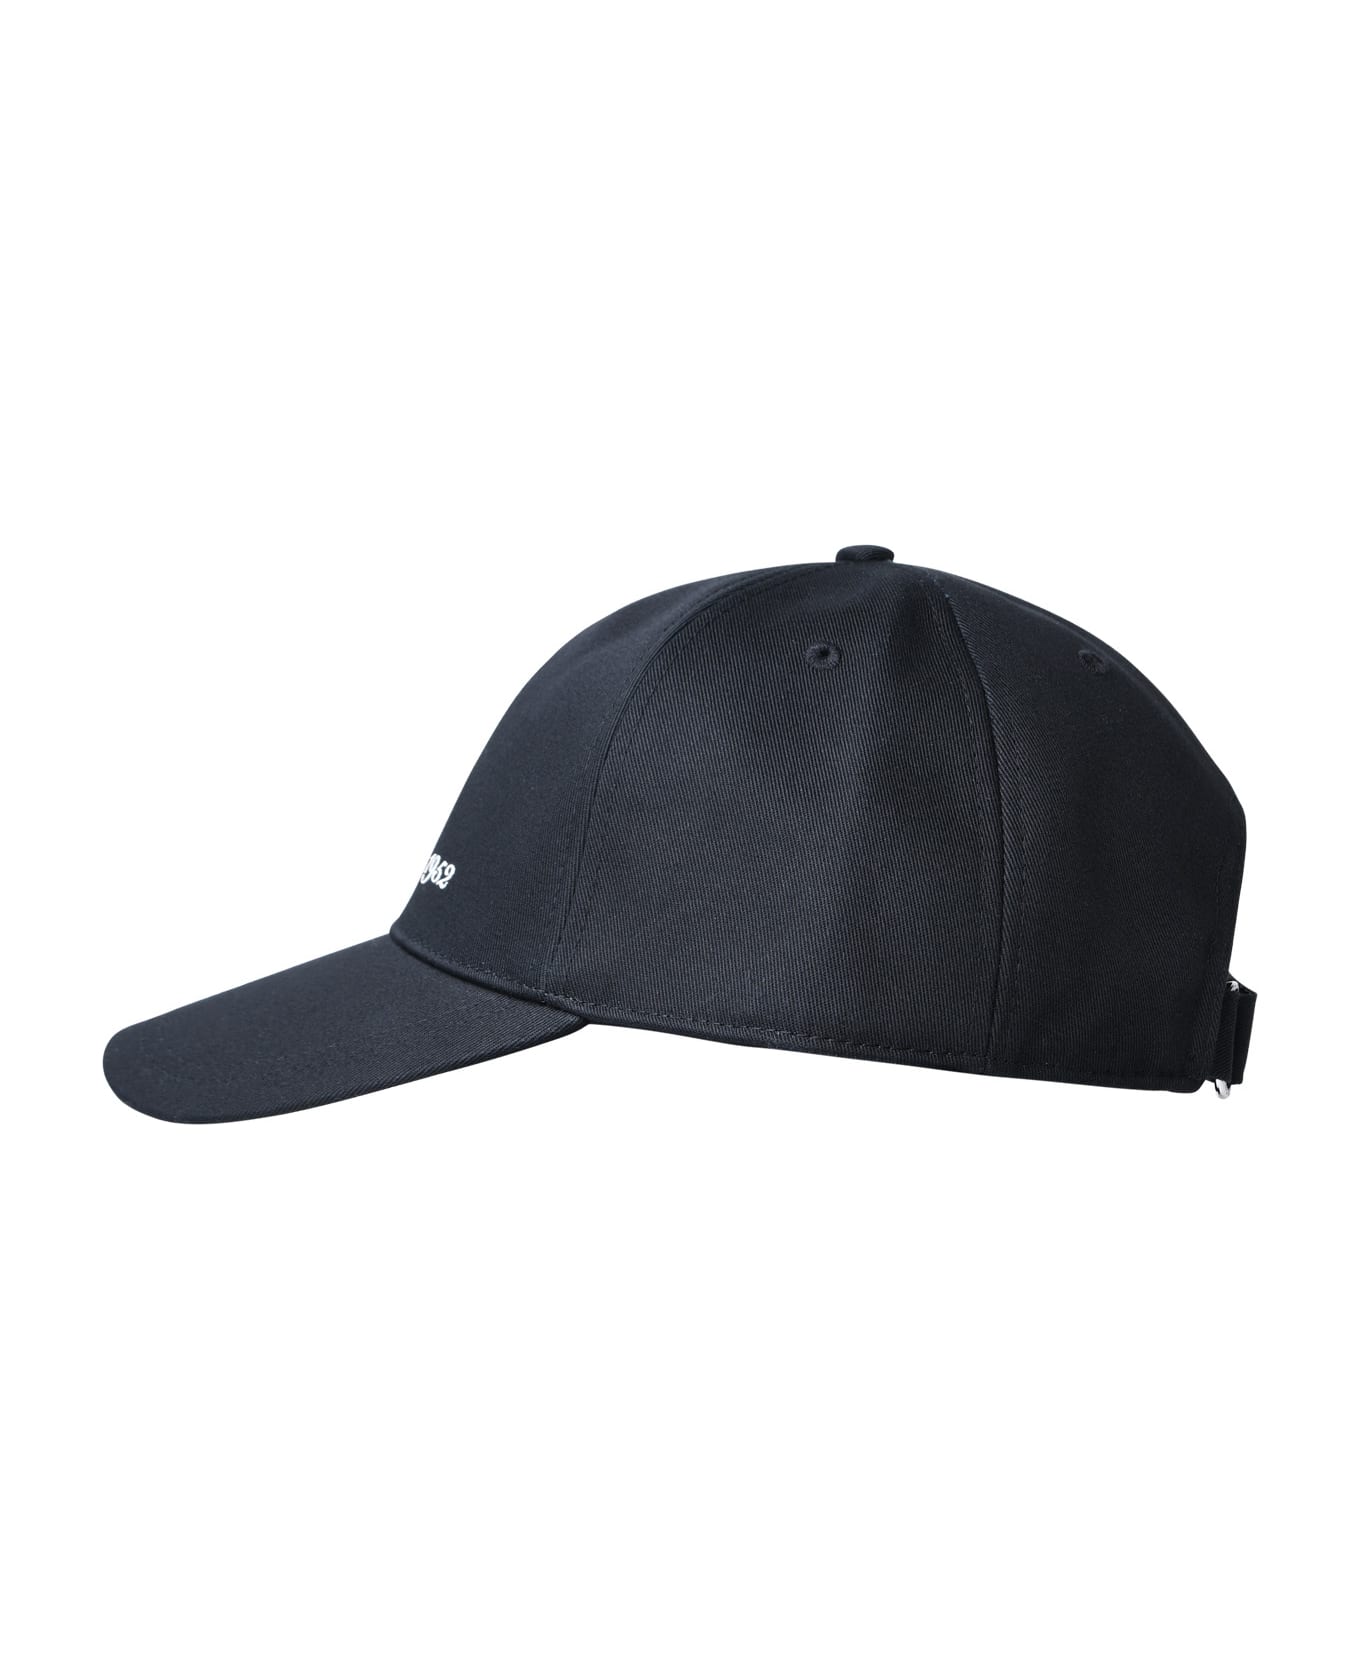 Moncler Black Cotton Hat - Black